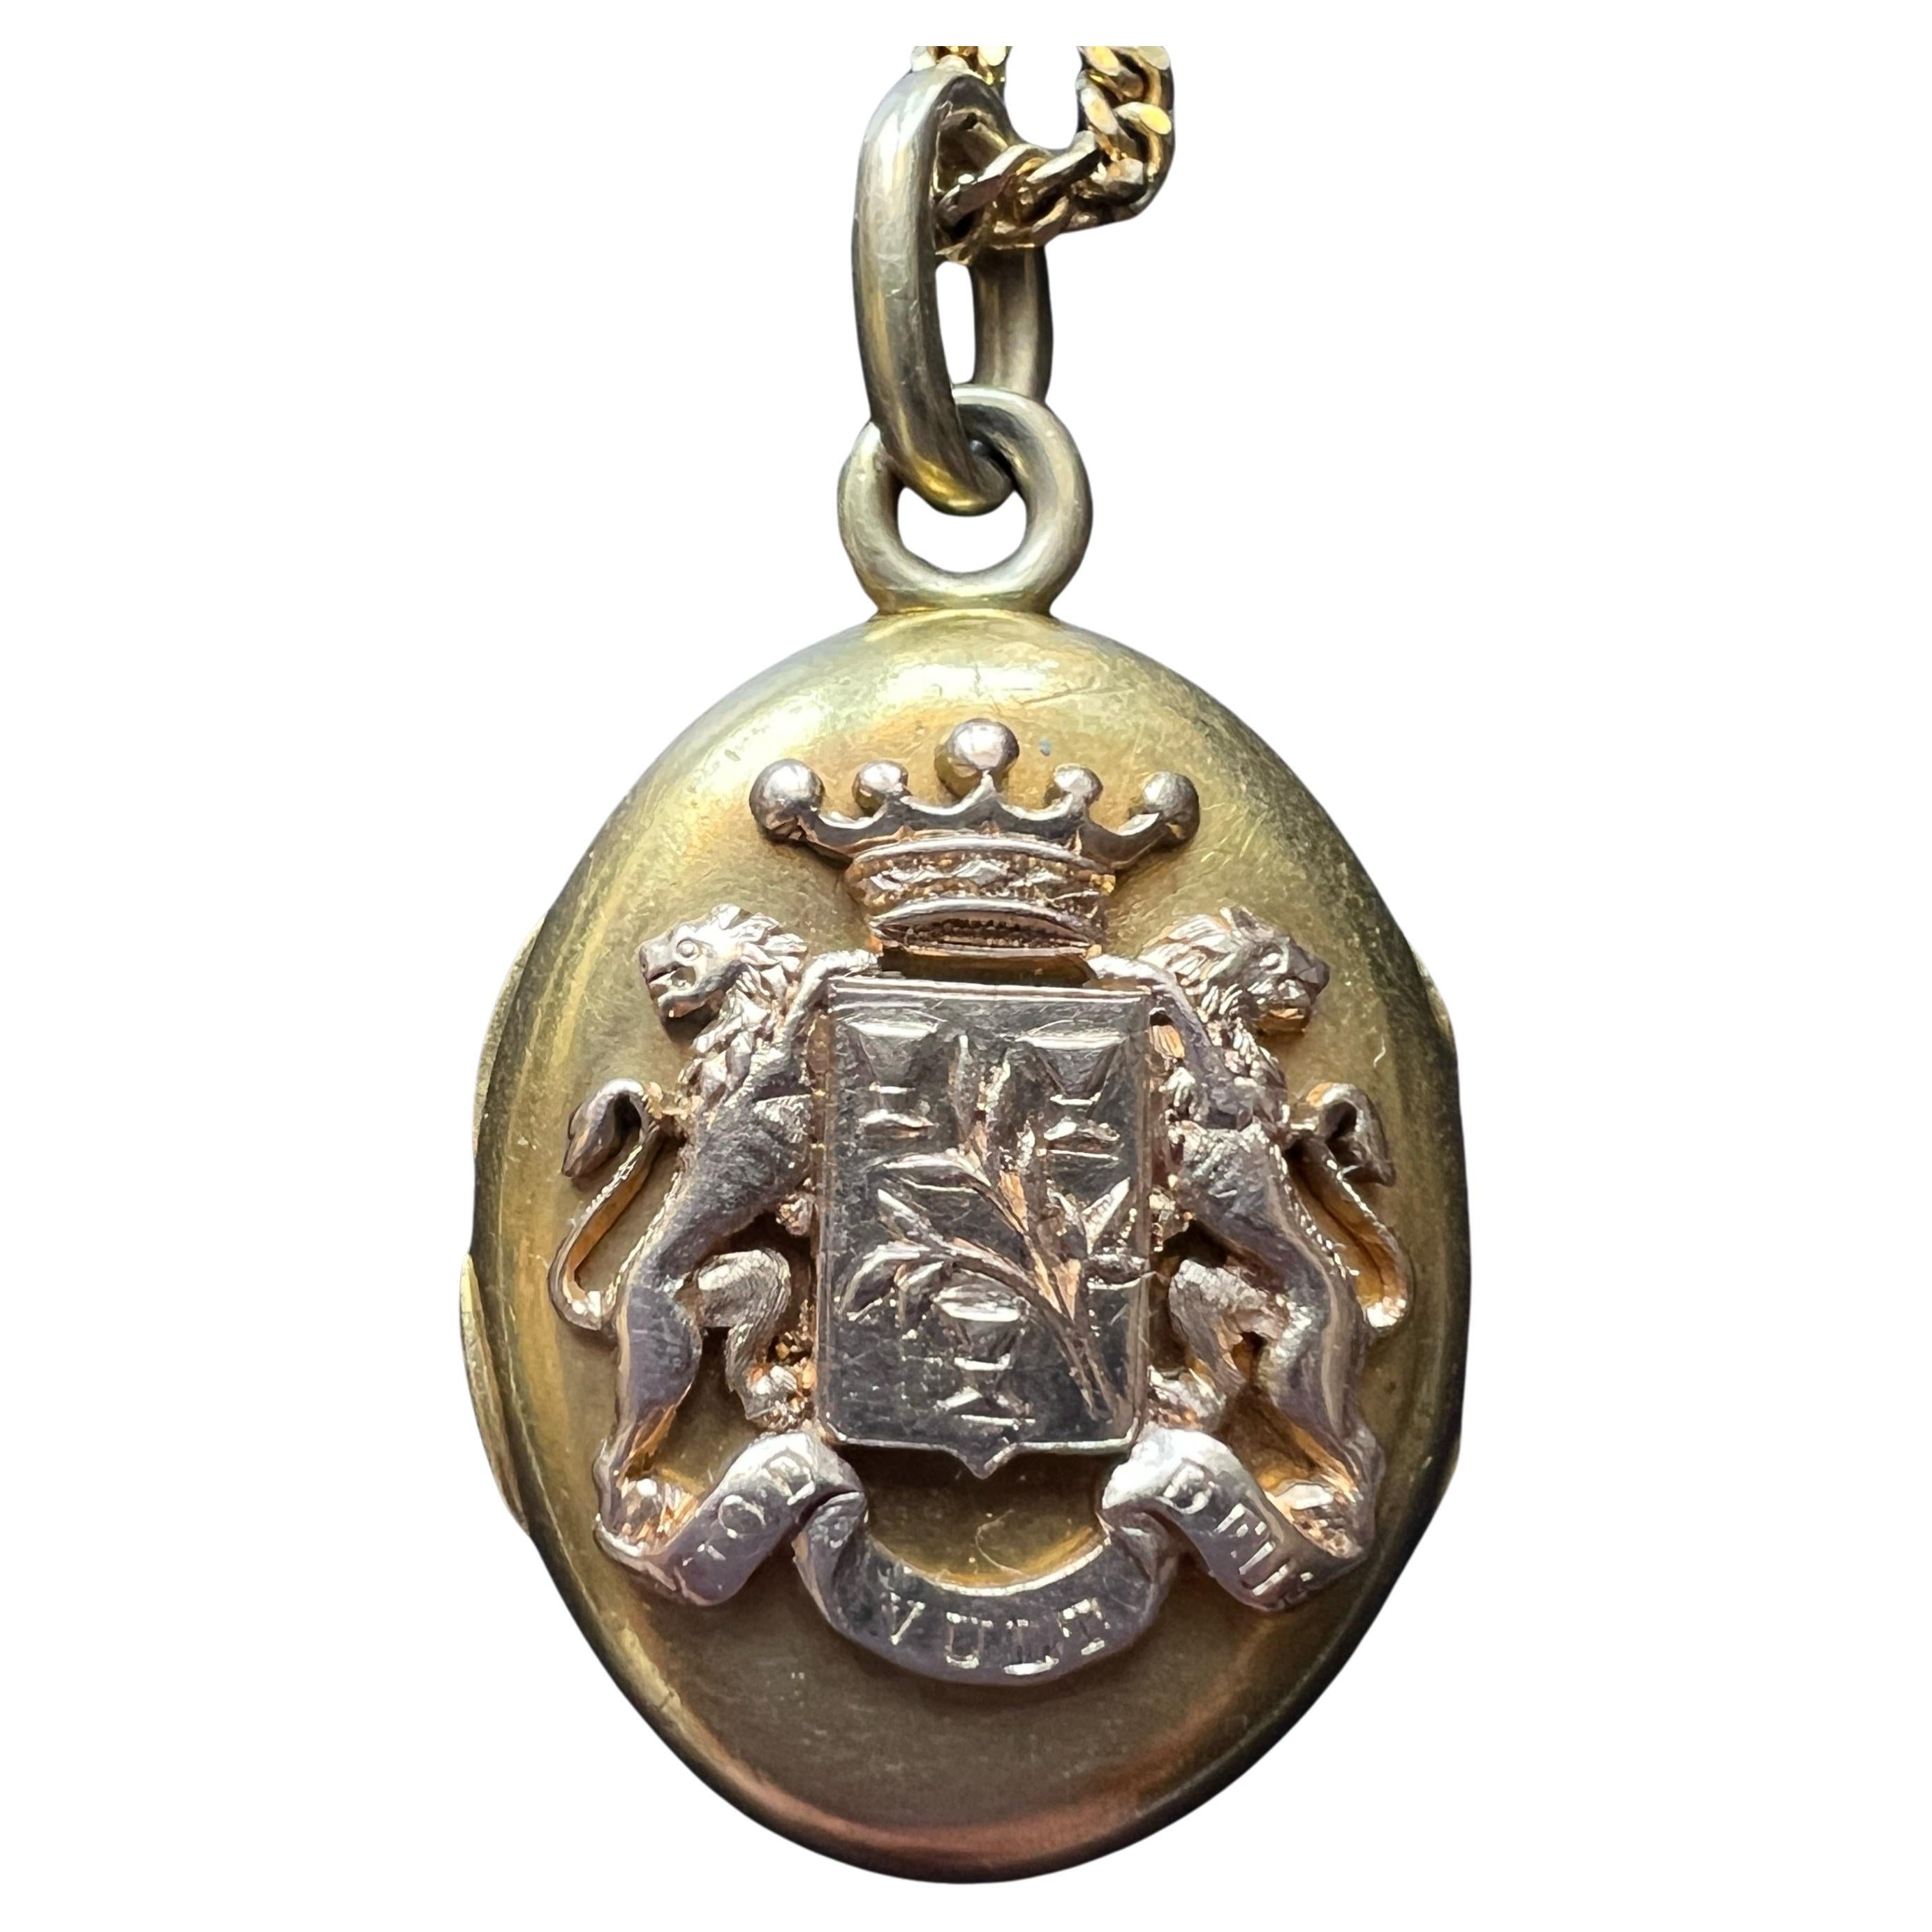 Pendentif en or 18K d'époque victorienne avec armoiries, couronne de lion et fleurs